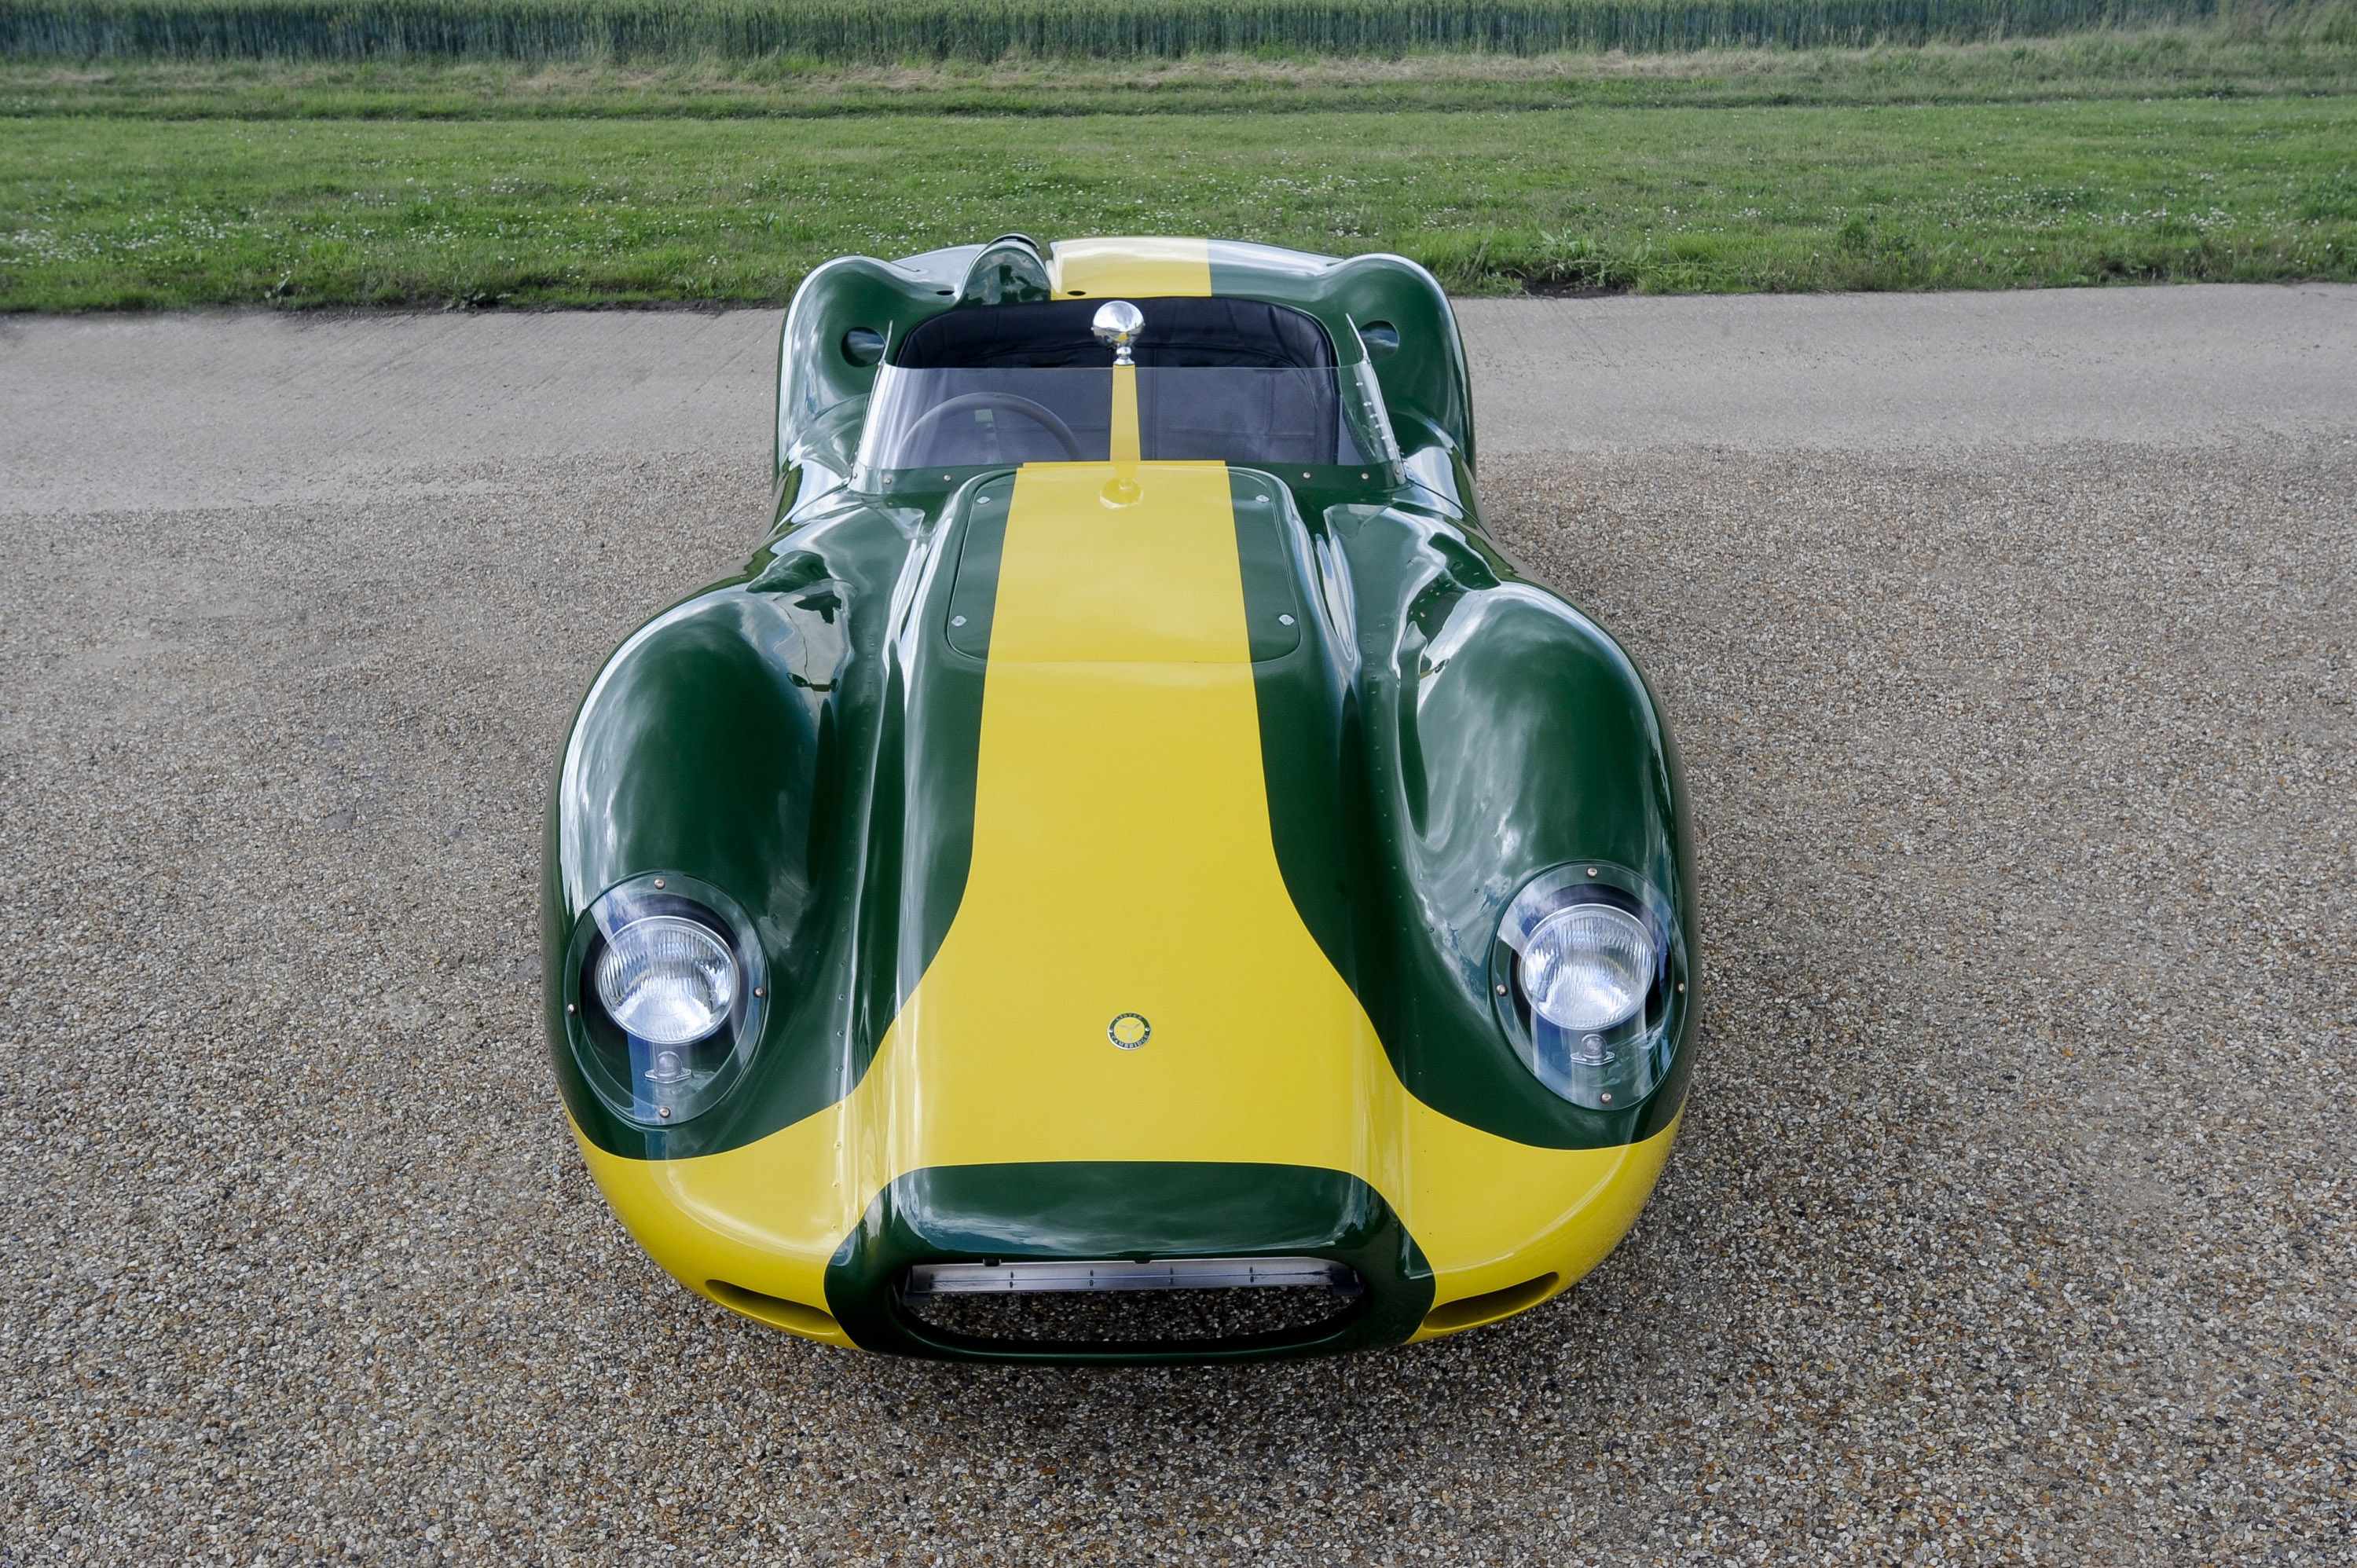 Lister Knobby Jaguar Stirling Moss